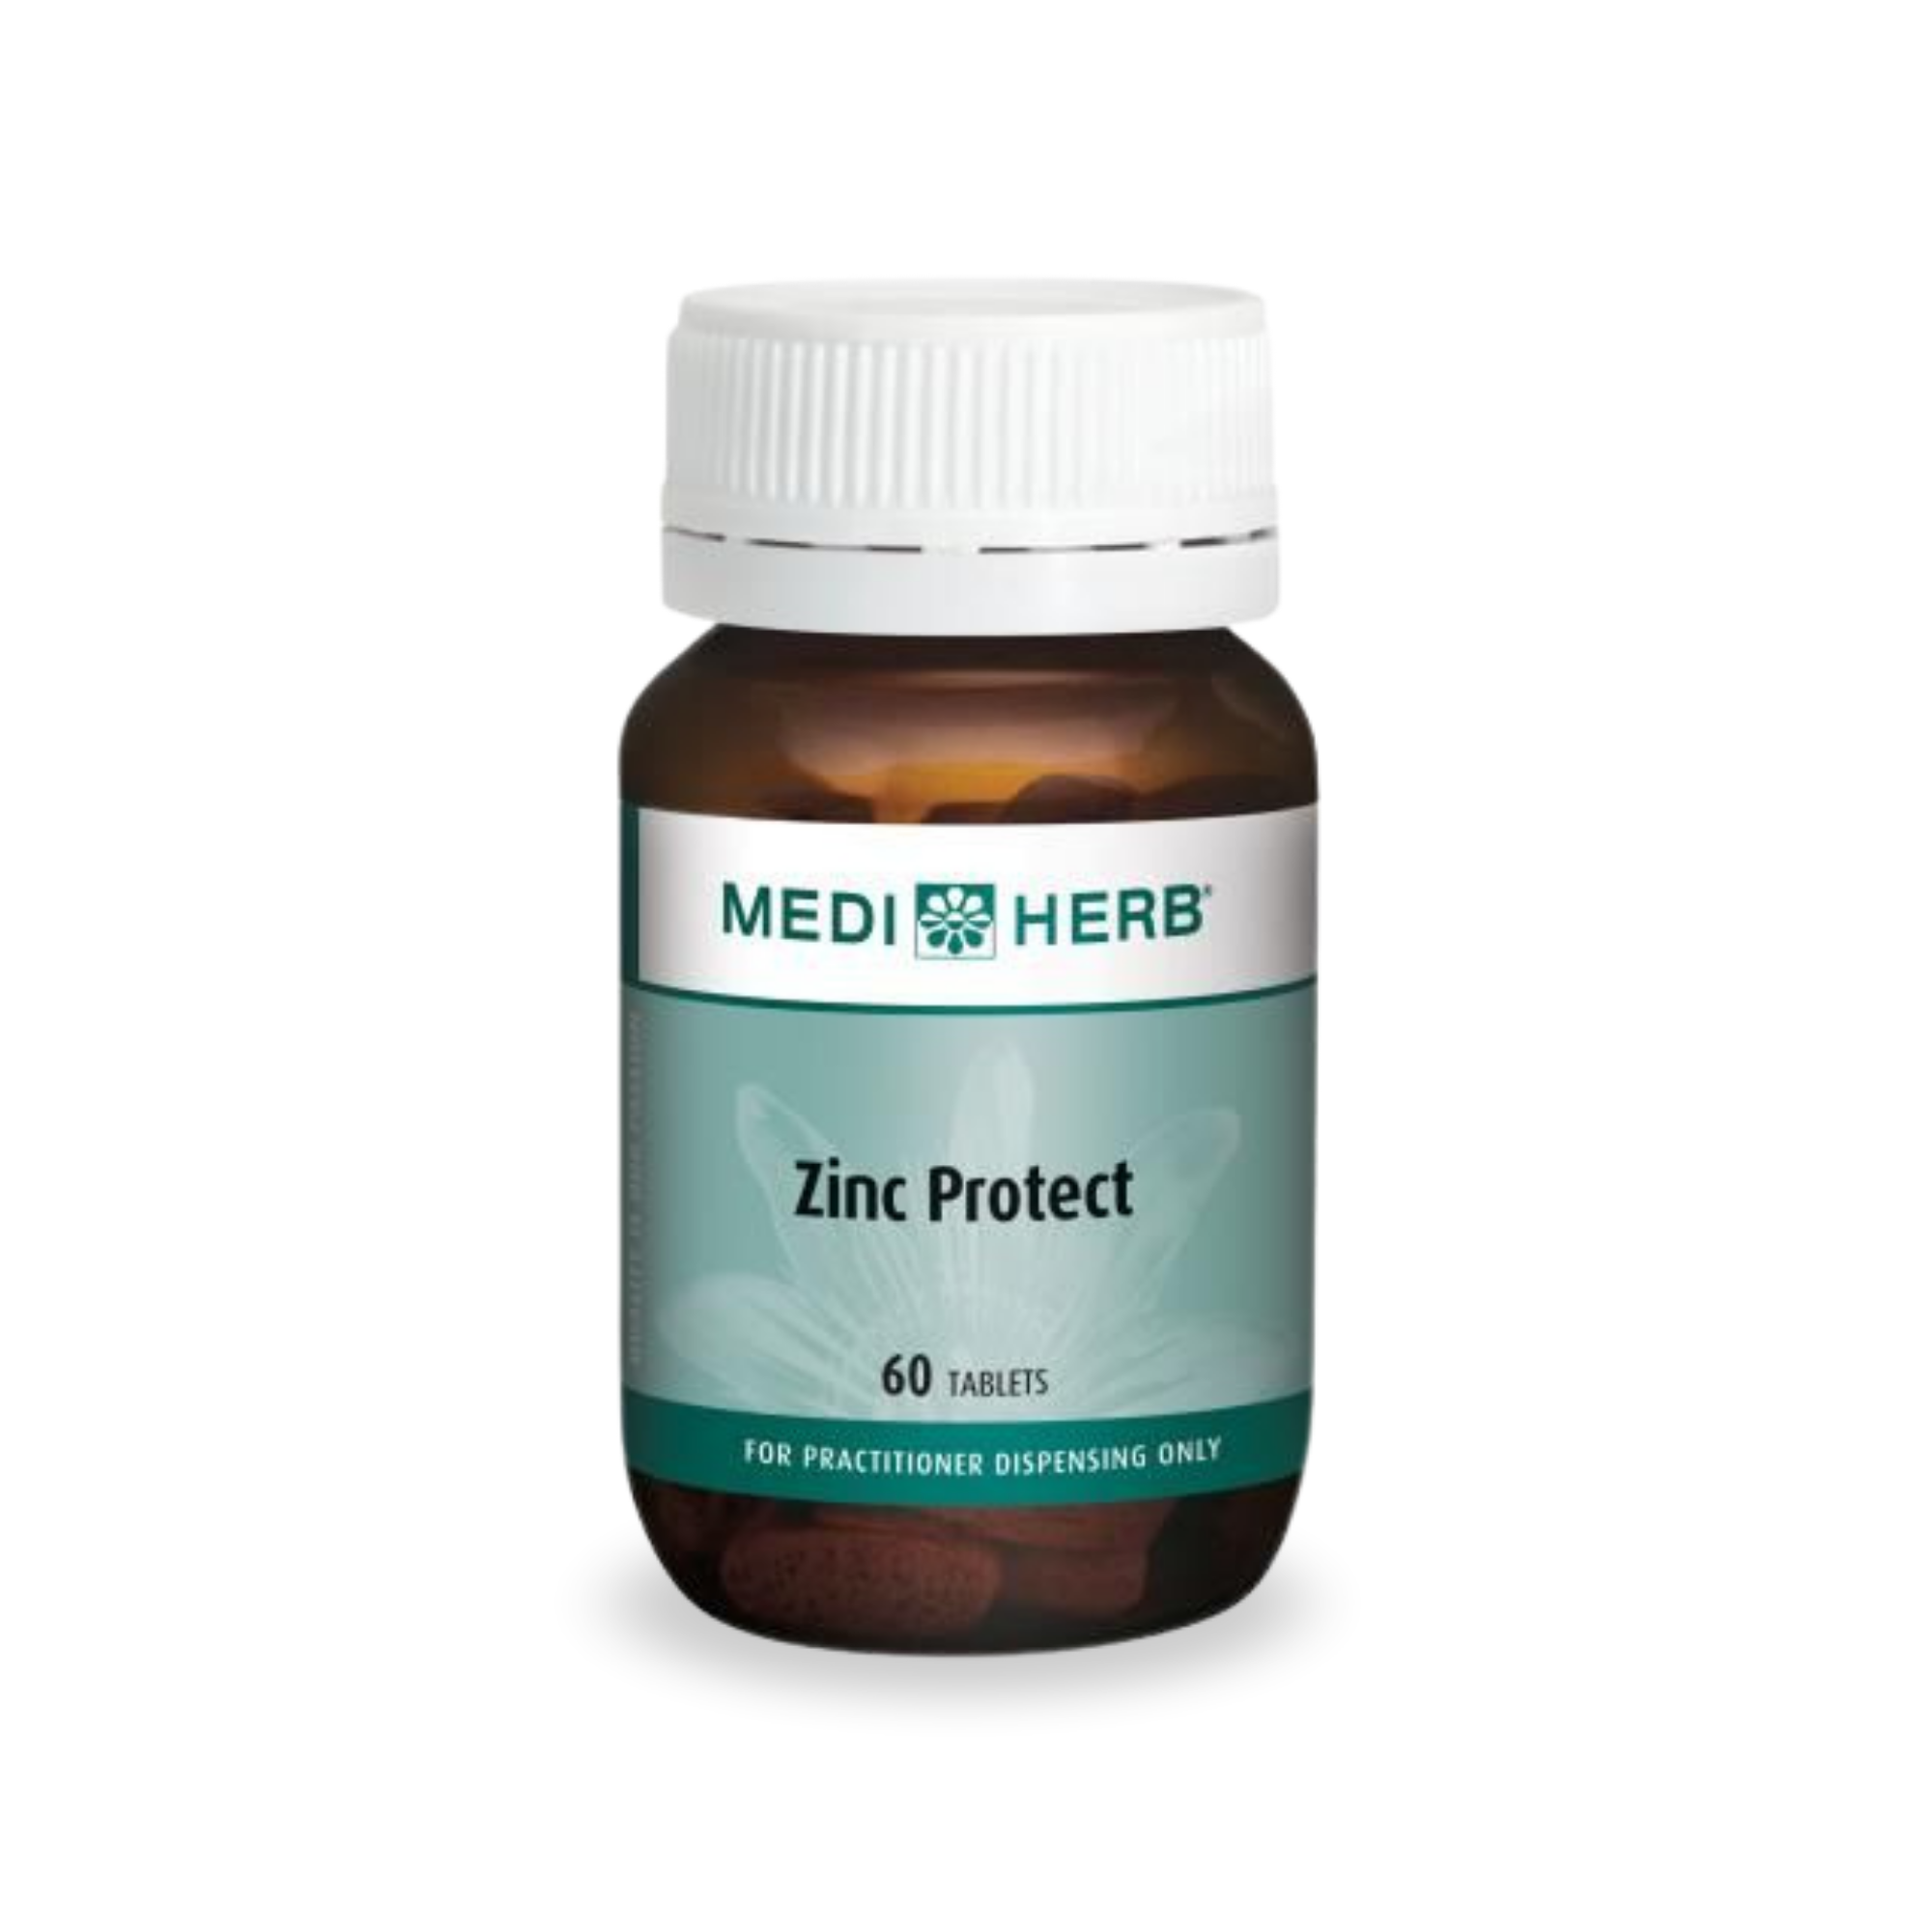 MediHerb Zinc Protect 60 Tablets 